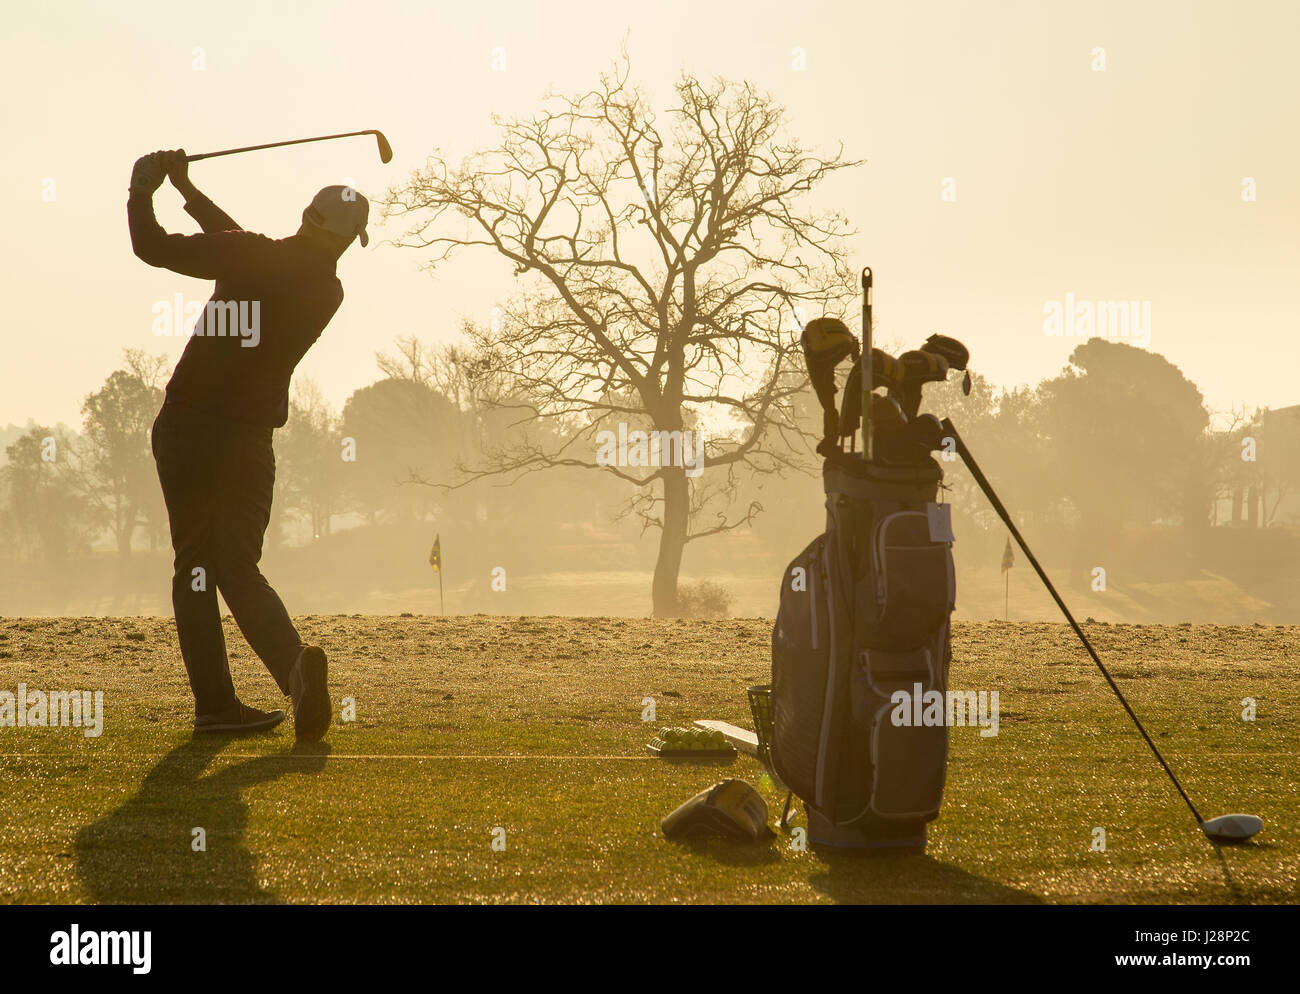 Les golfeurs se balançant clubs de golf de soleil du matin sur la pratique d'entraînement à l'aube. Banque D'Images